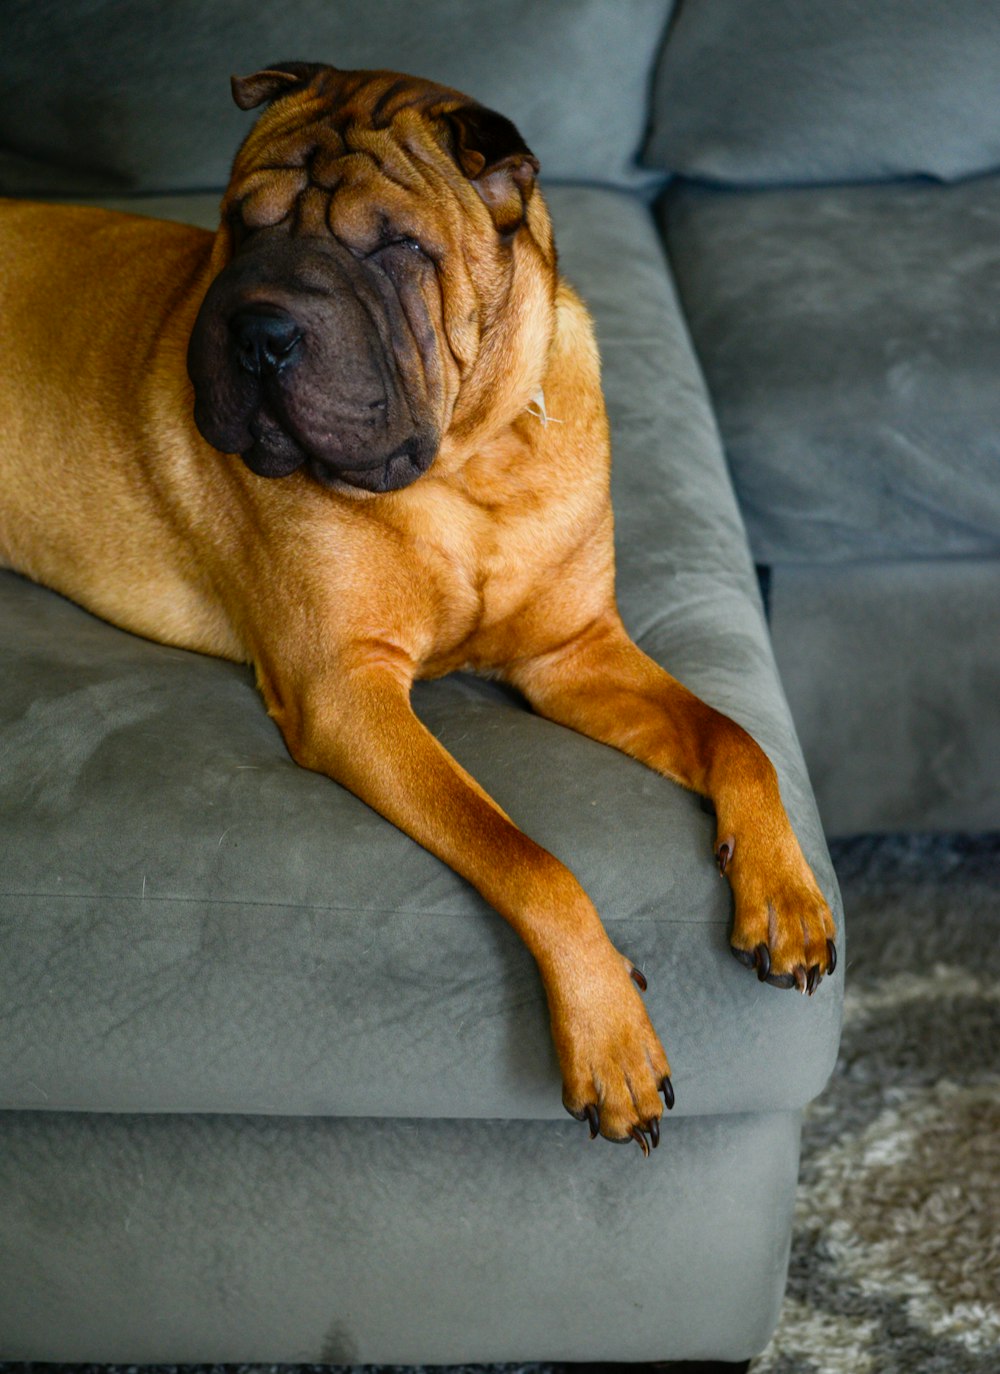 Ein großer brauner Hund liegt auf einer grauen Couch